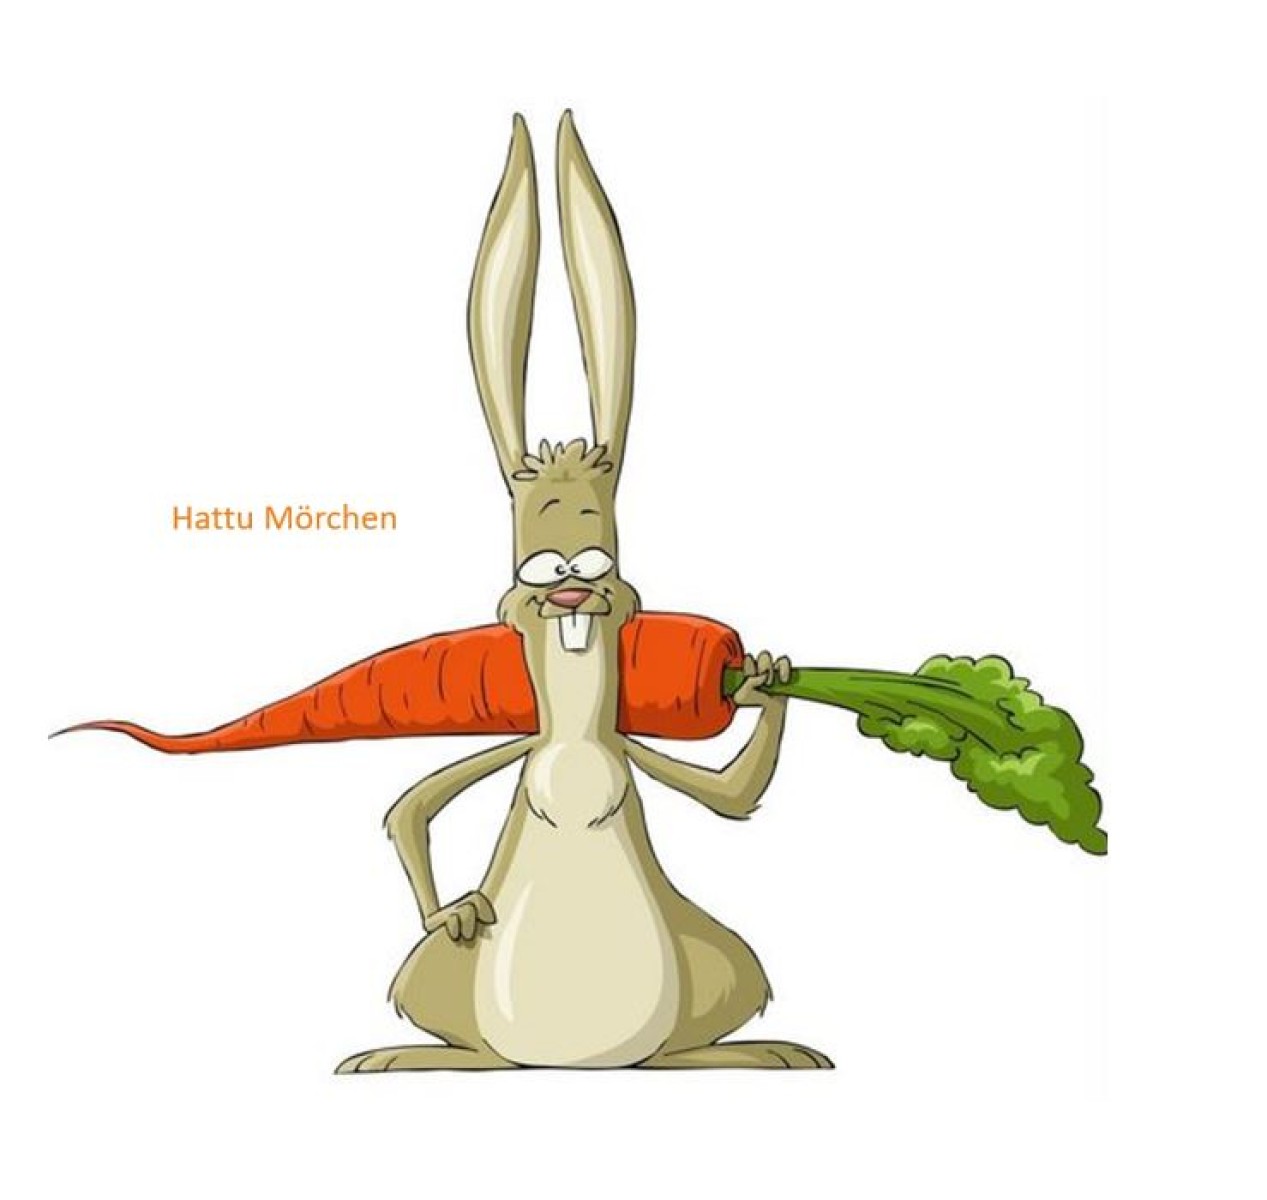 Wanna be carrots?